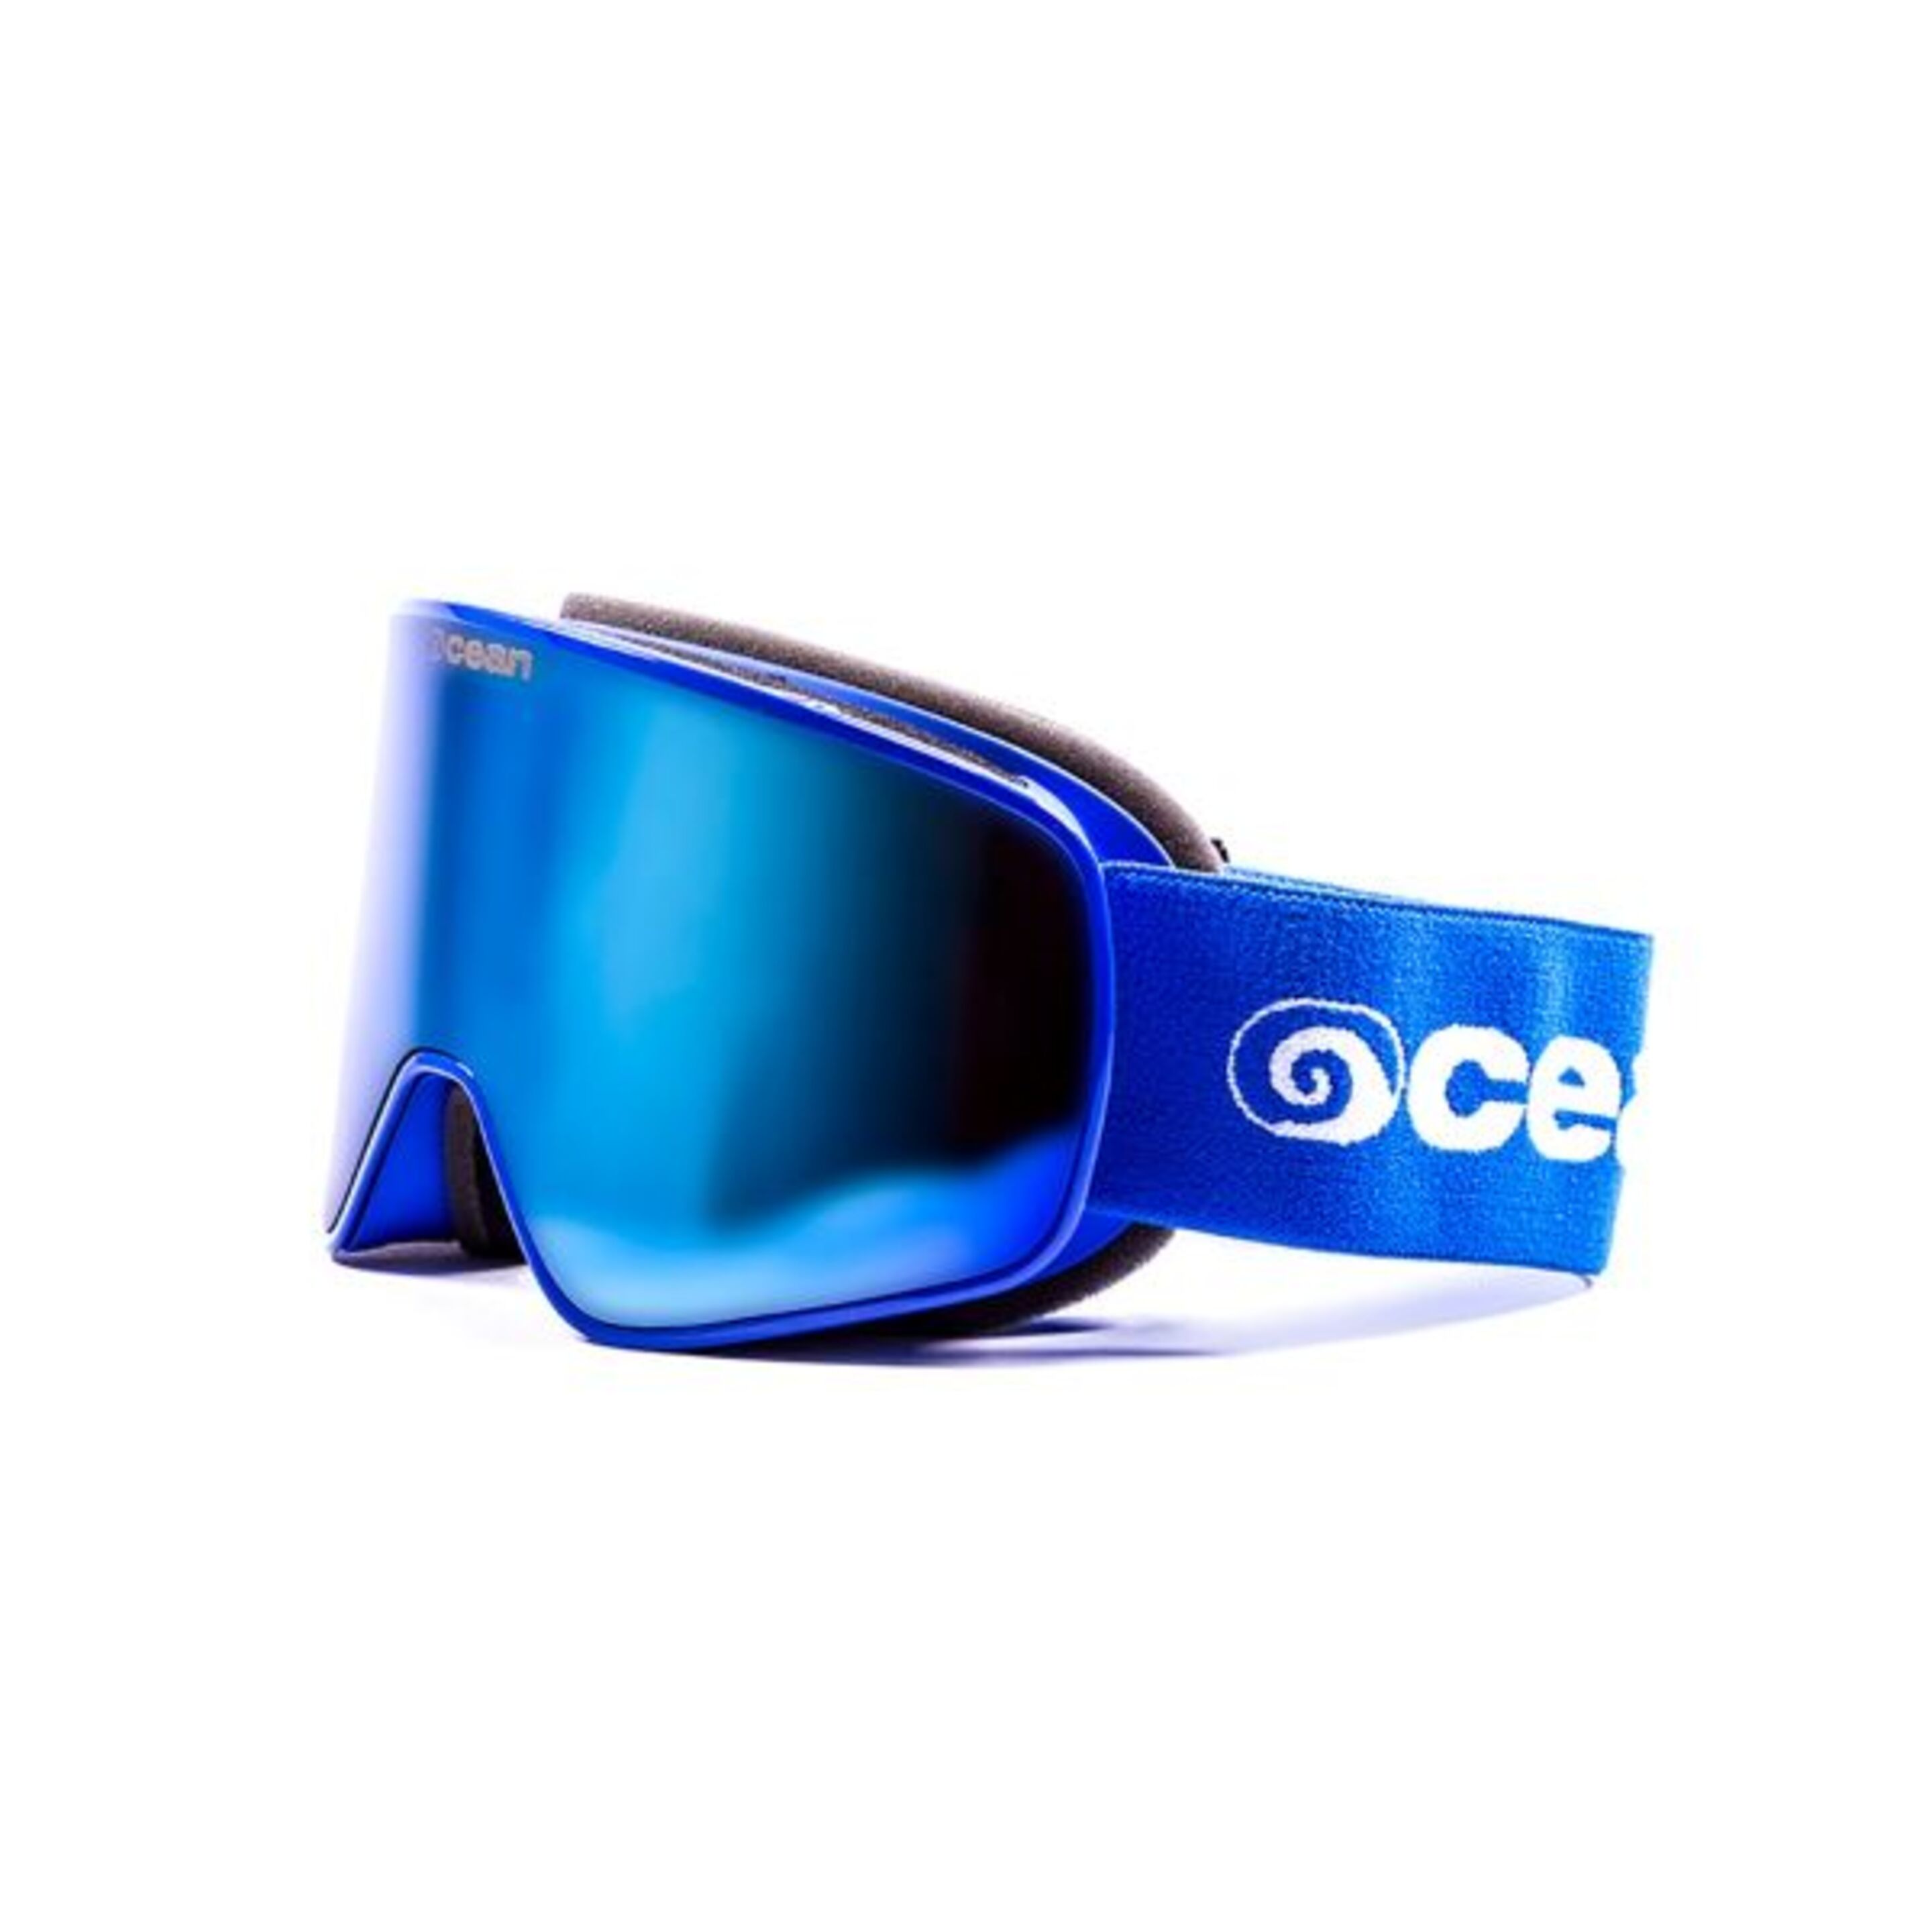 Mascara De Ski Ocean Sunglasses Aspen - azul - 